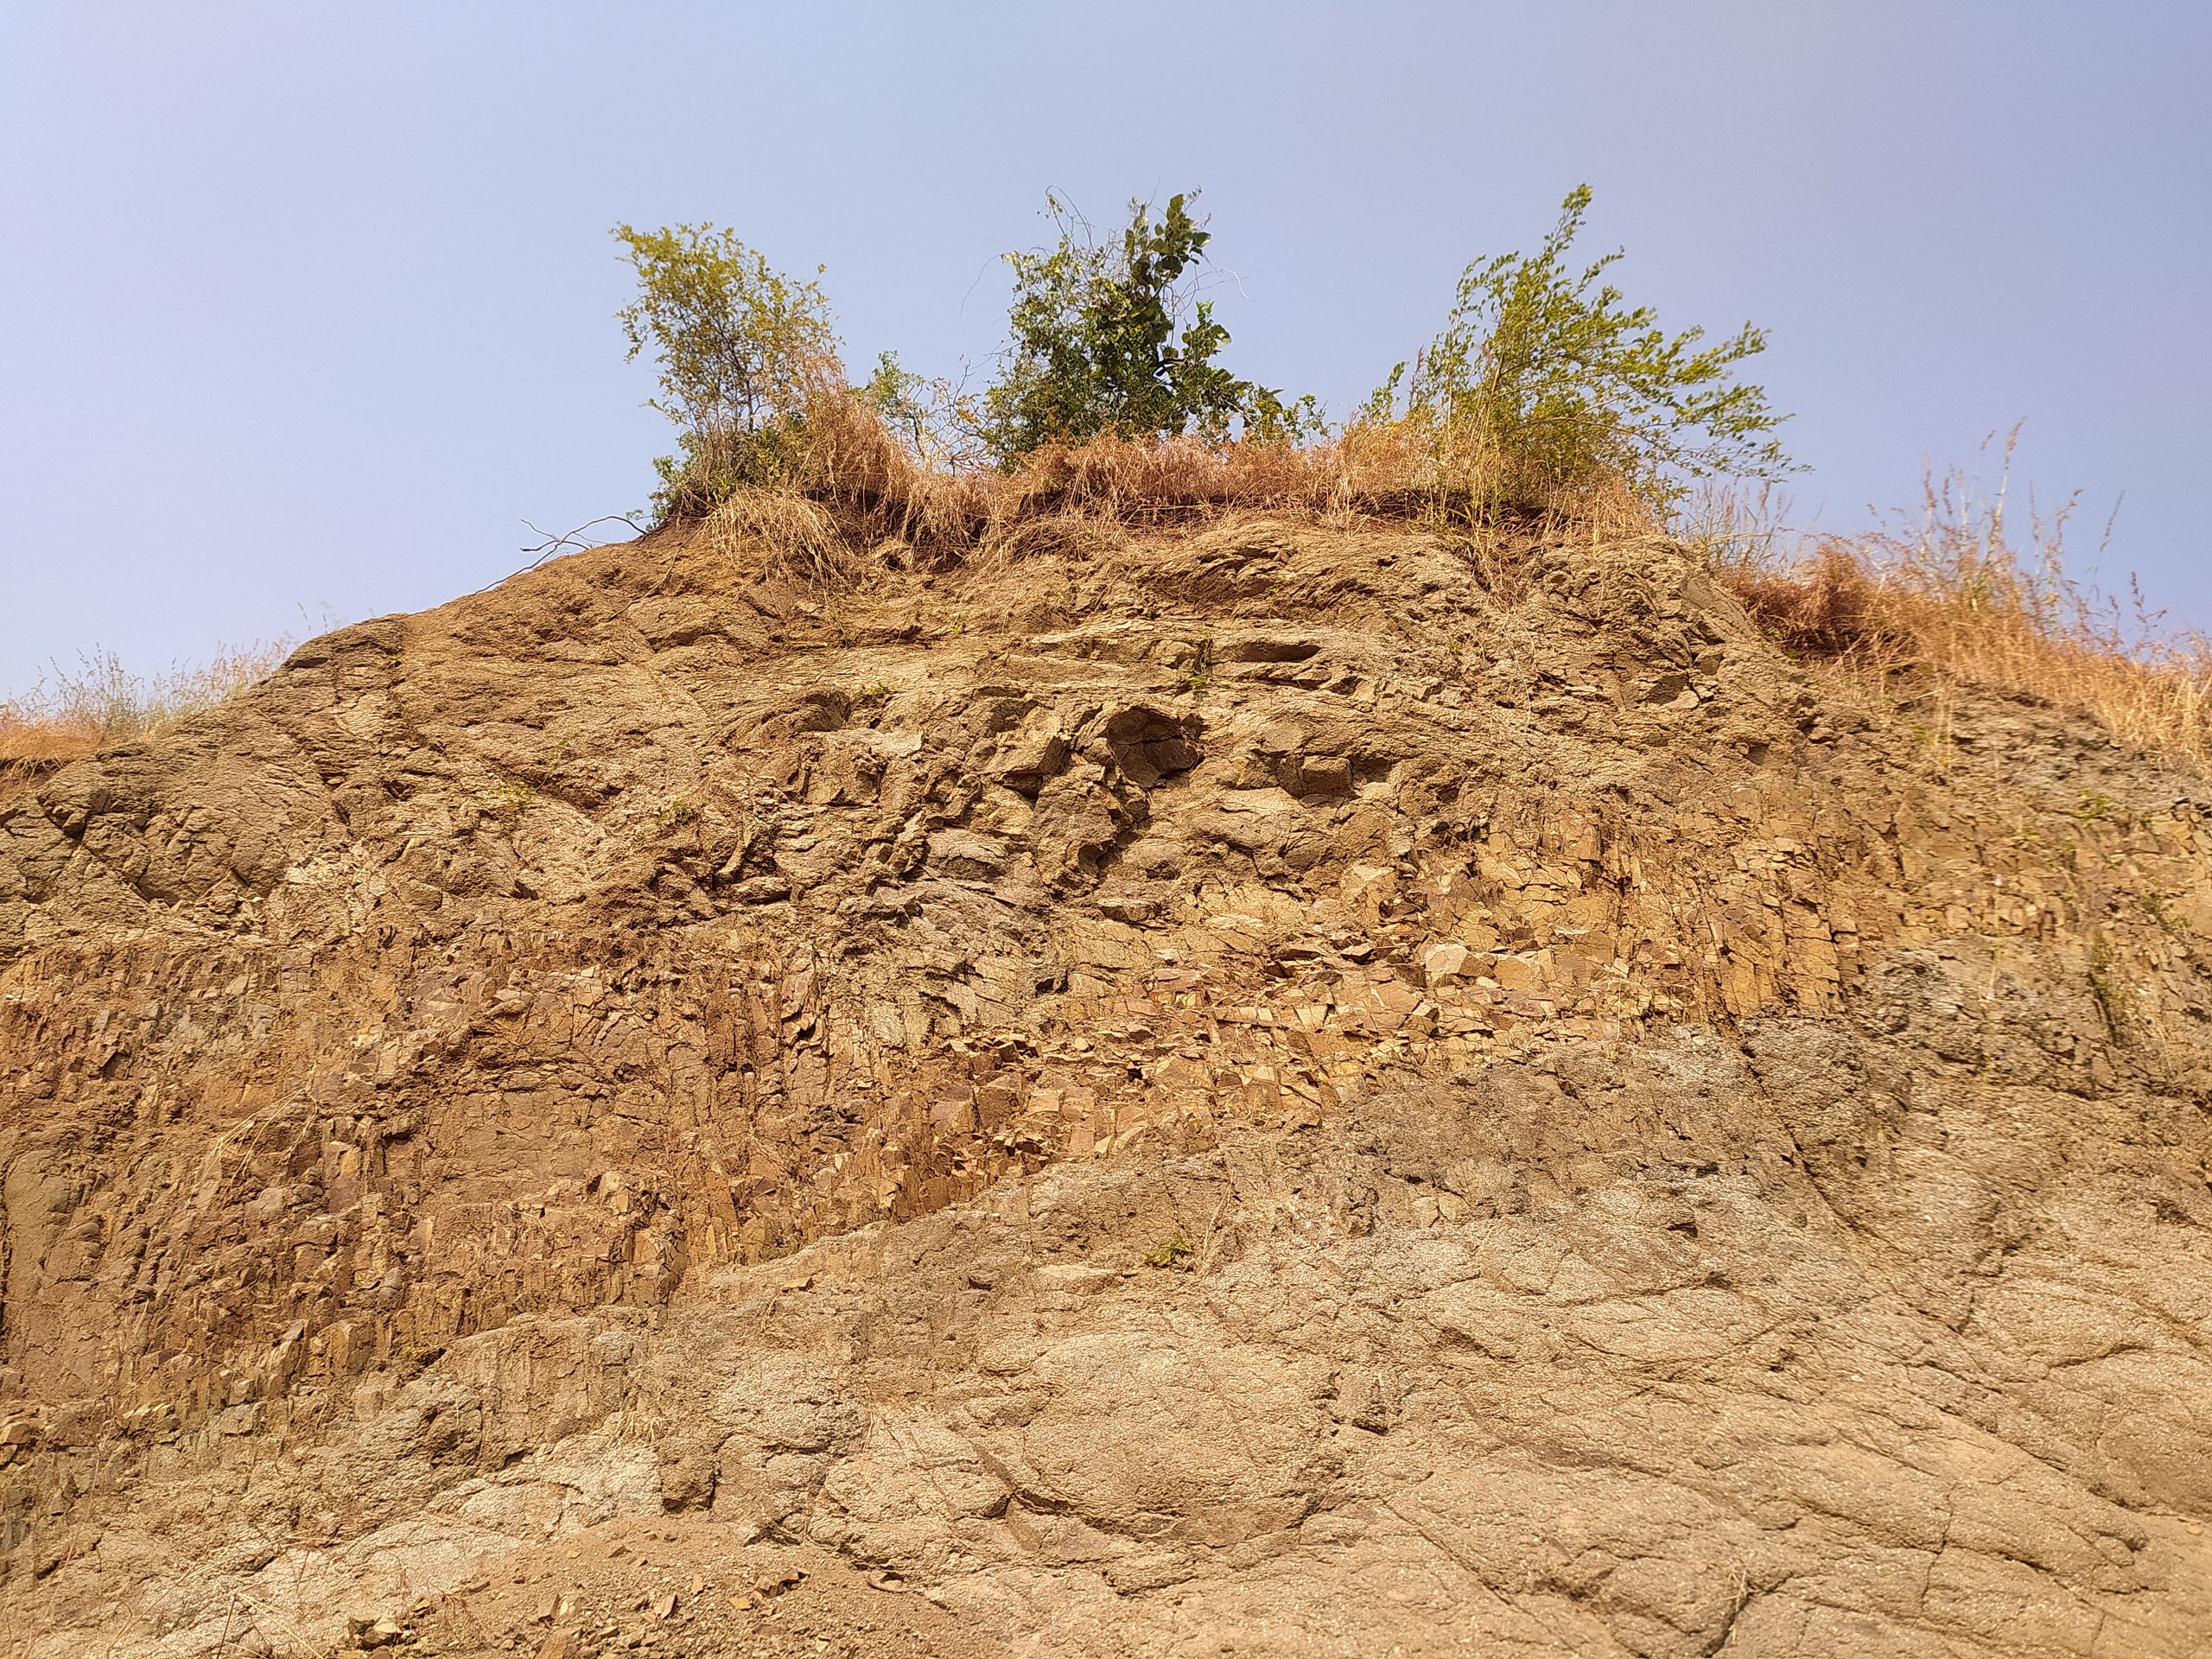 Landslide on a hill